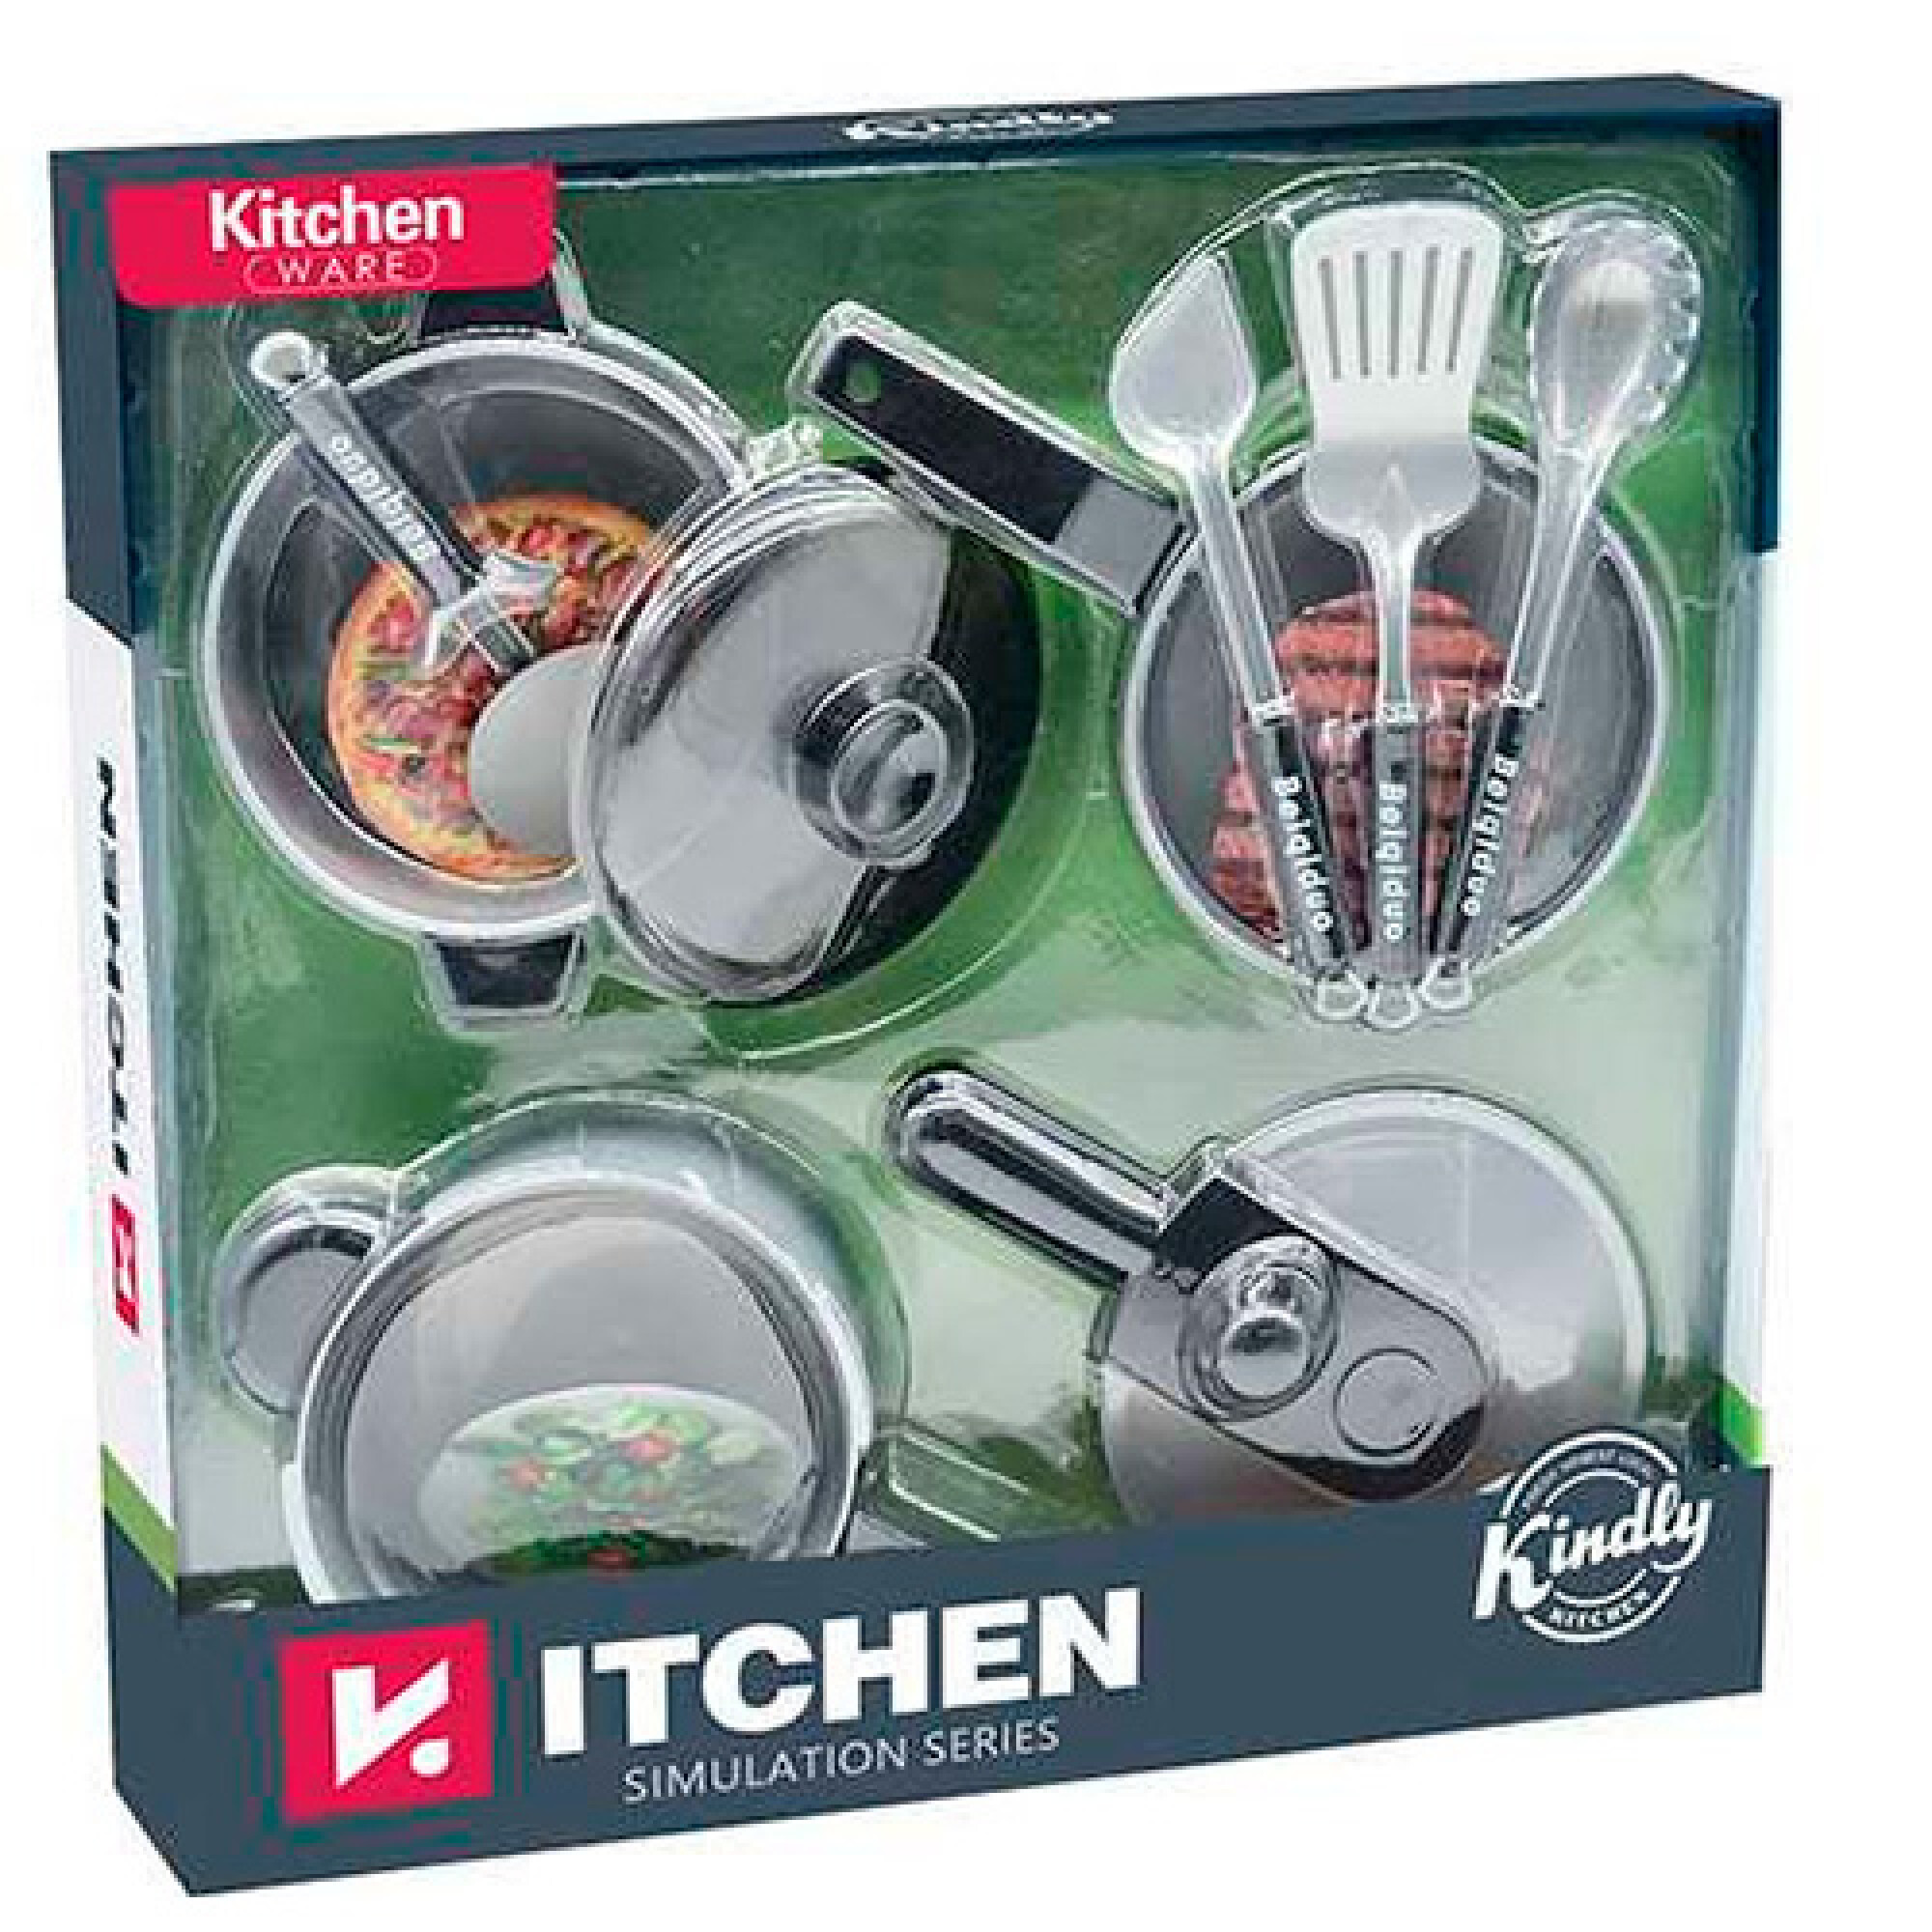 Juego de 35 piezas de accesorios de cocina con utensilios de cocina de  acero inoxidable, utensilios de cocina, delantal, sombrero de chef y comida  de